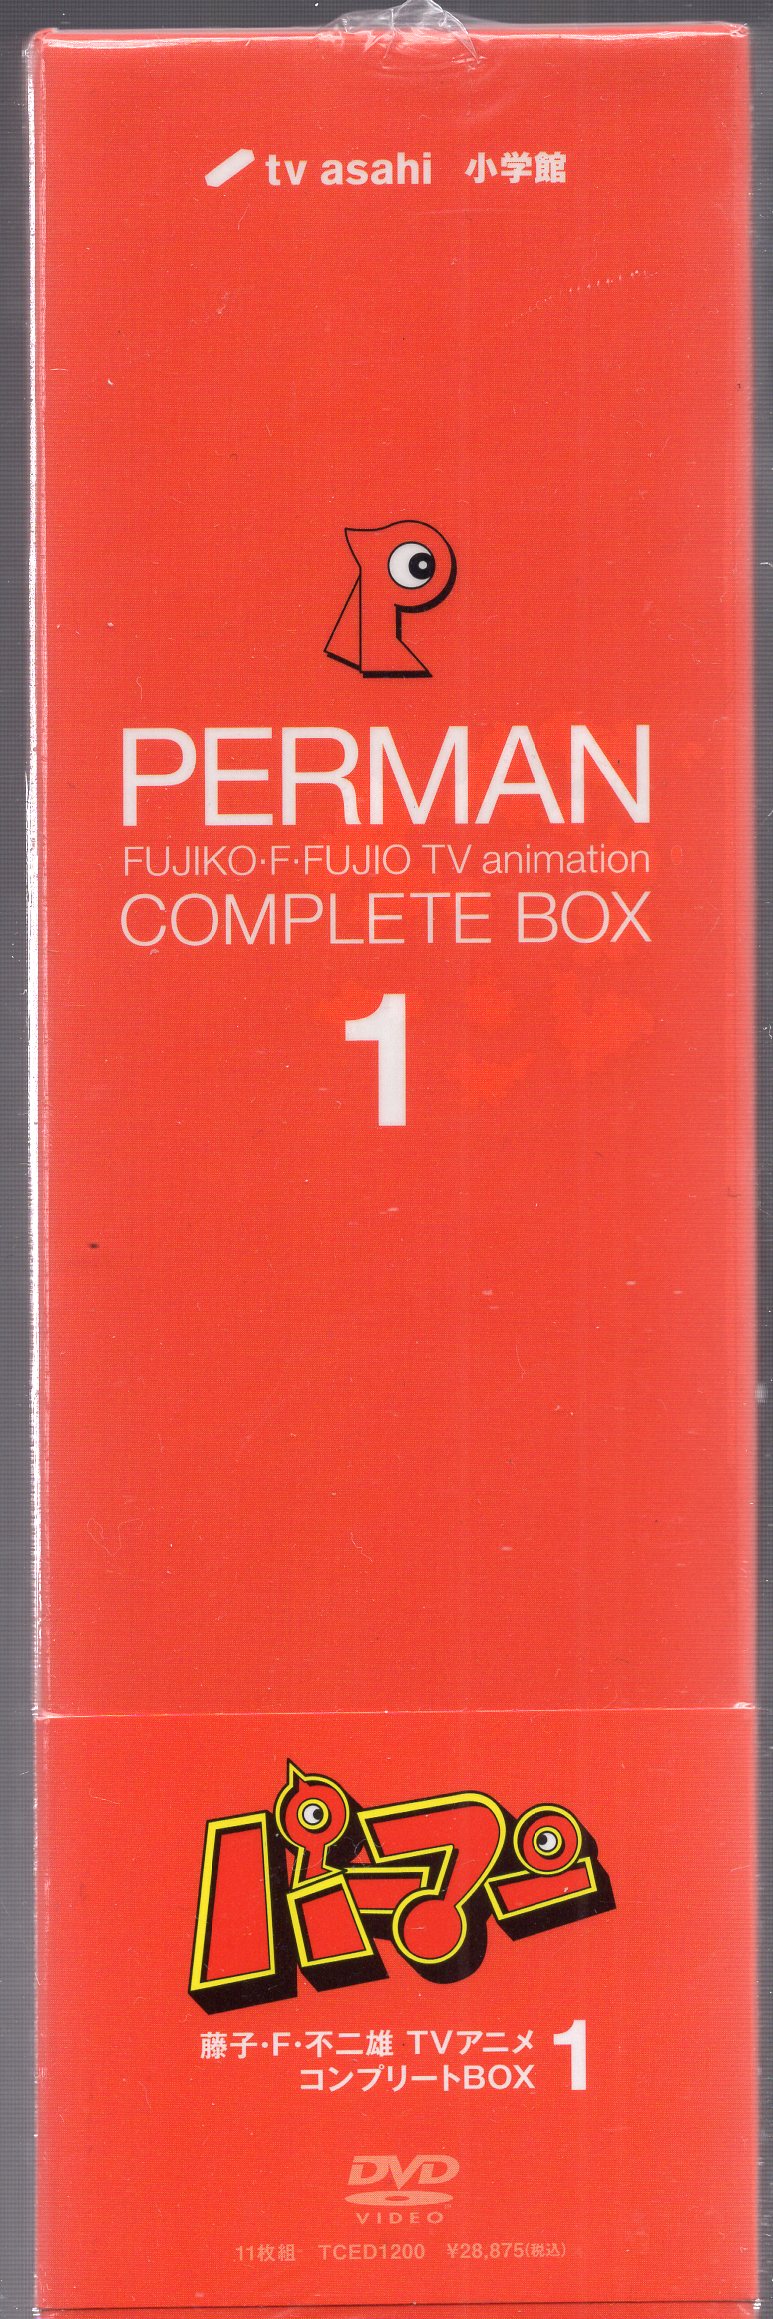 定番爆買いDVD パーマン Complete Box 4 は行